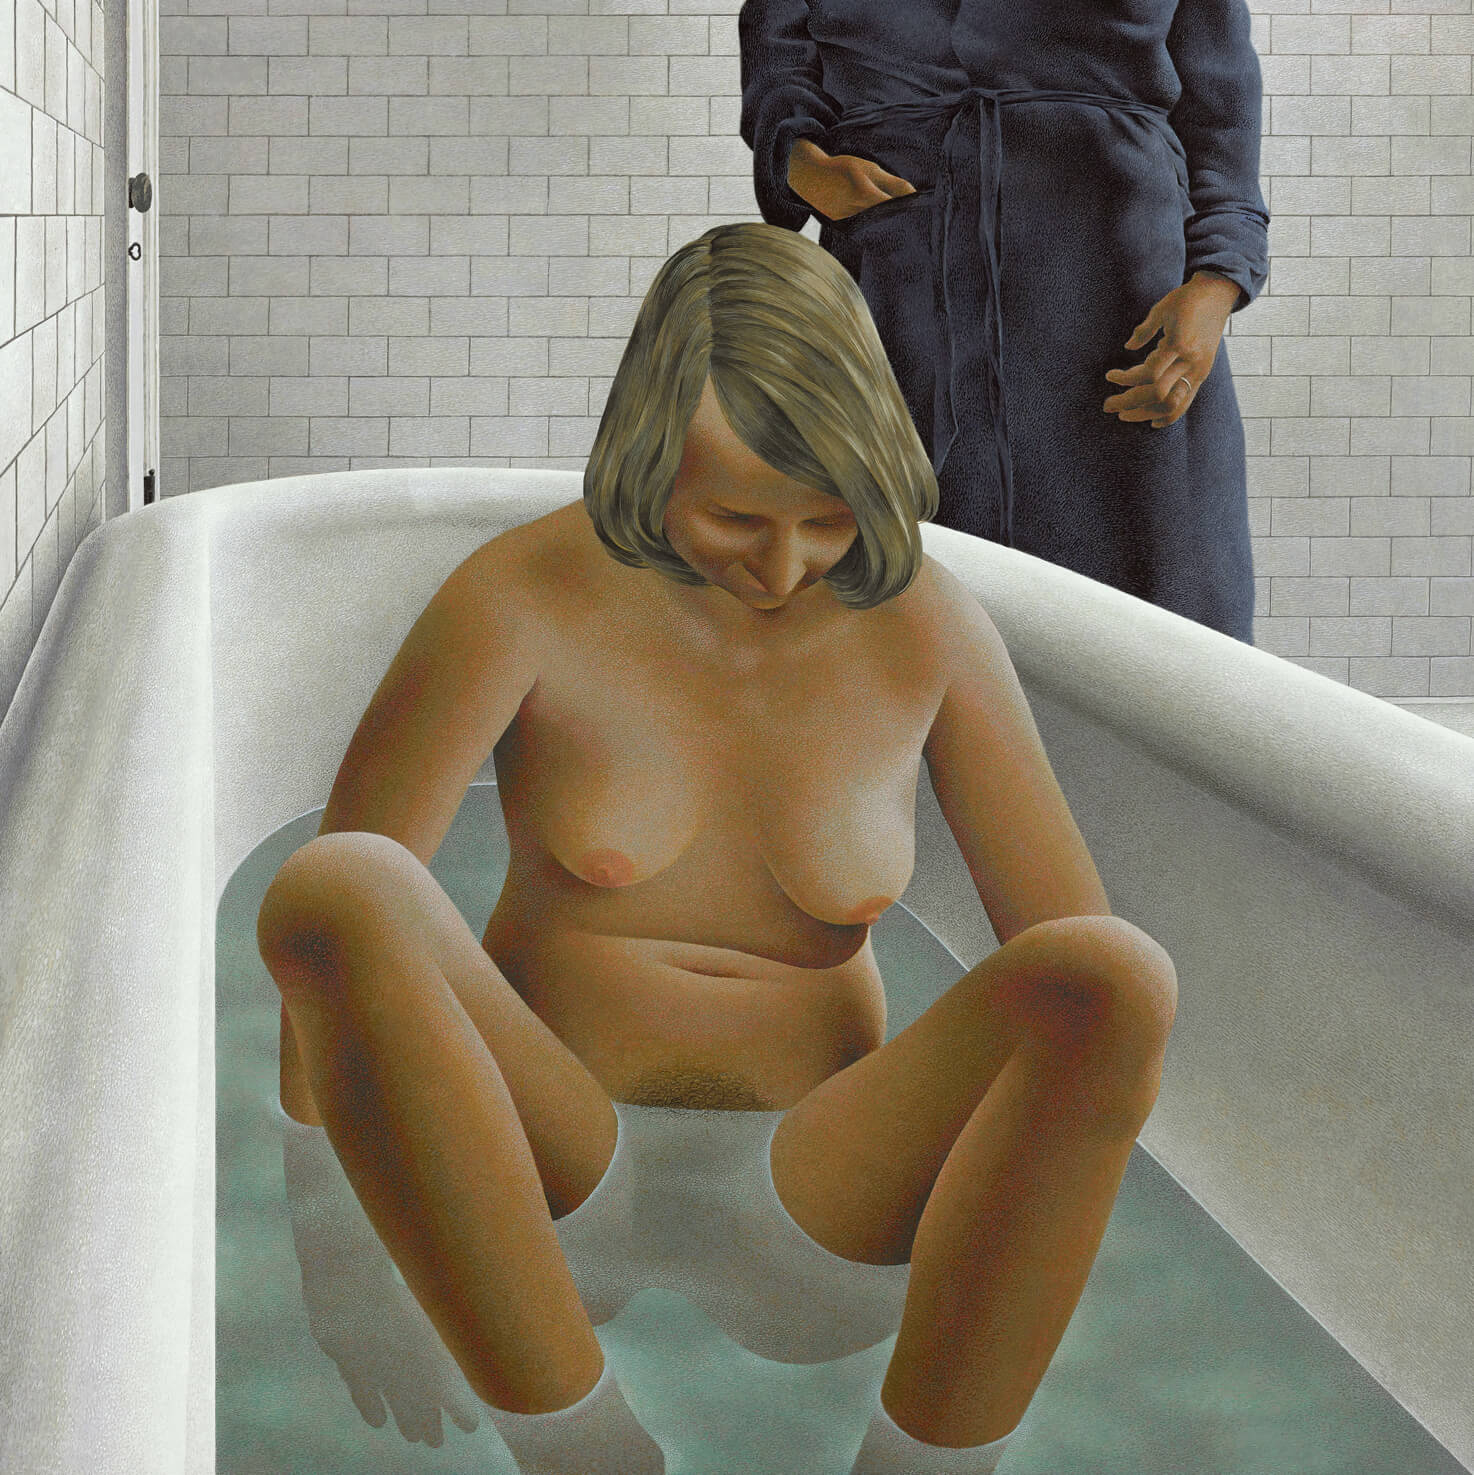 Alex Colville, Femme dans baignoire, 1973